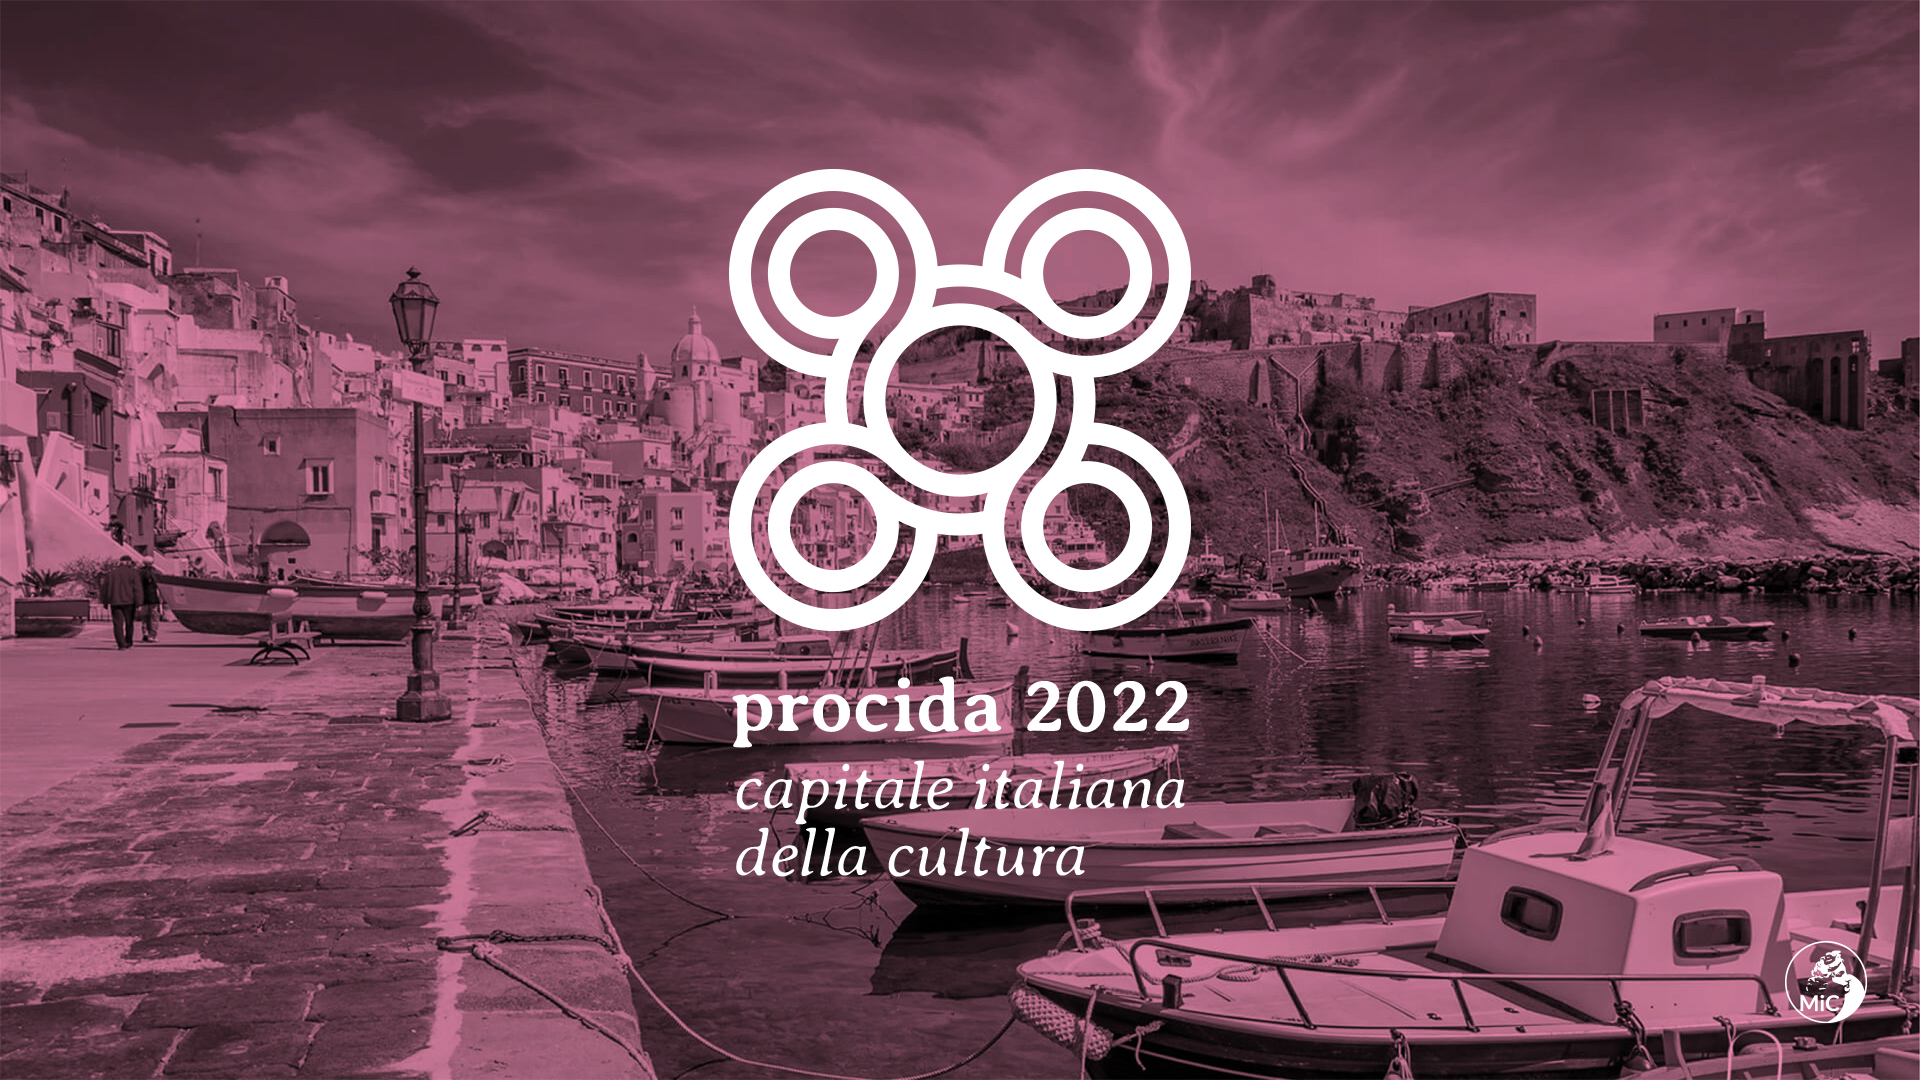 Procida Capitale Italiana della Cultura 2022: dodici mesi di grandi eventi